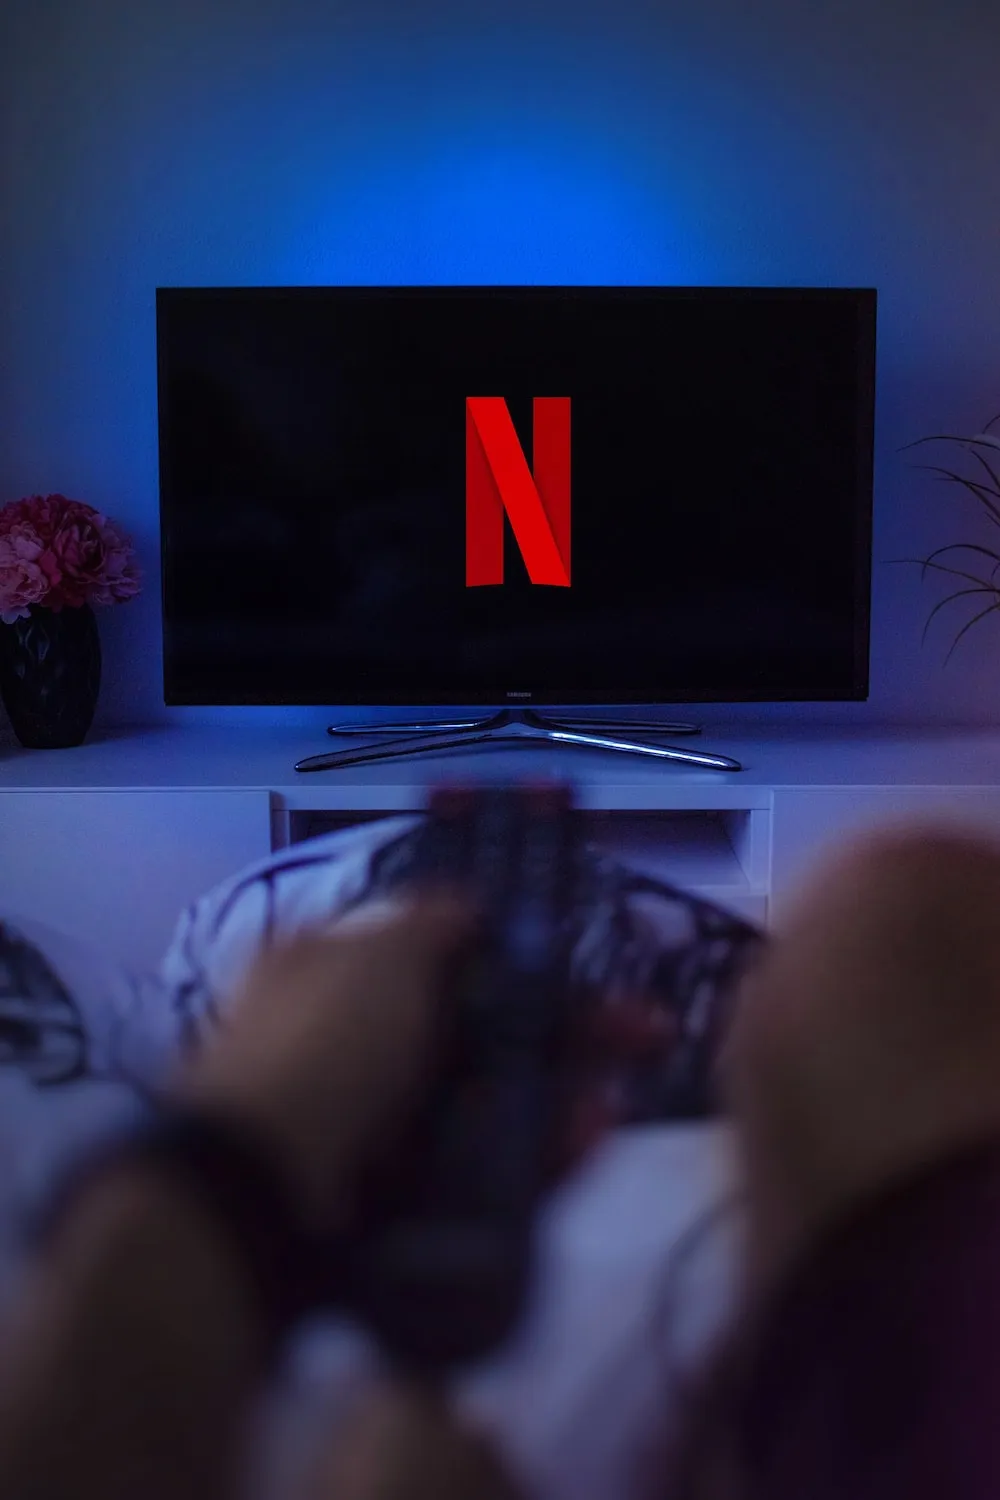 Společnost Netflix potvrdila další kolo propouštění, protože se nadále potýká se zpomalujícím se růstem a ruší přibližně 300 pozic